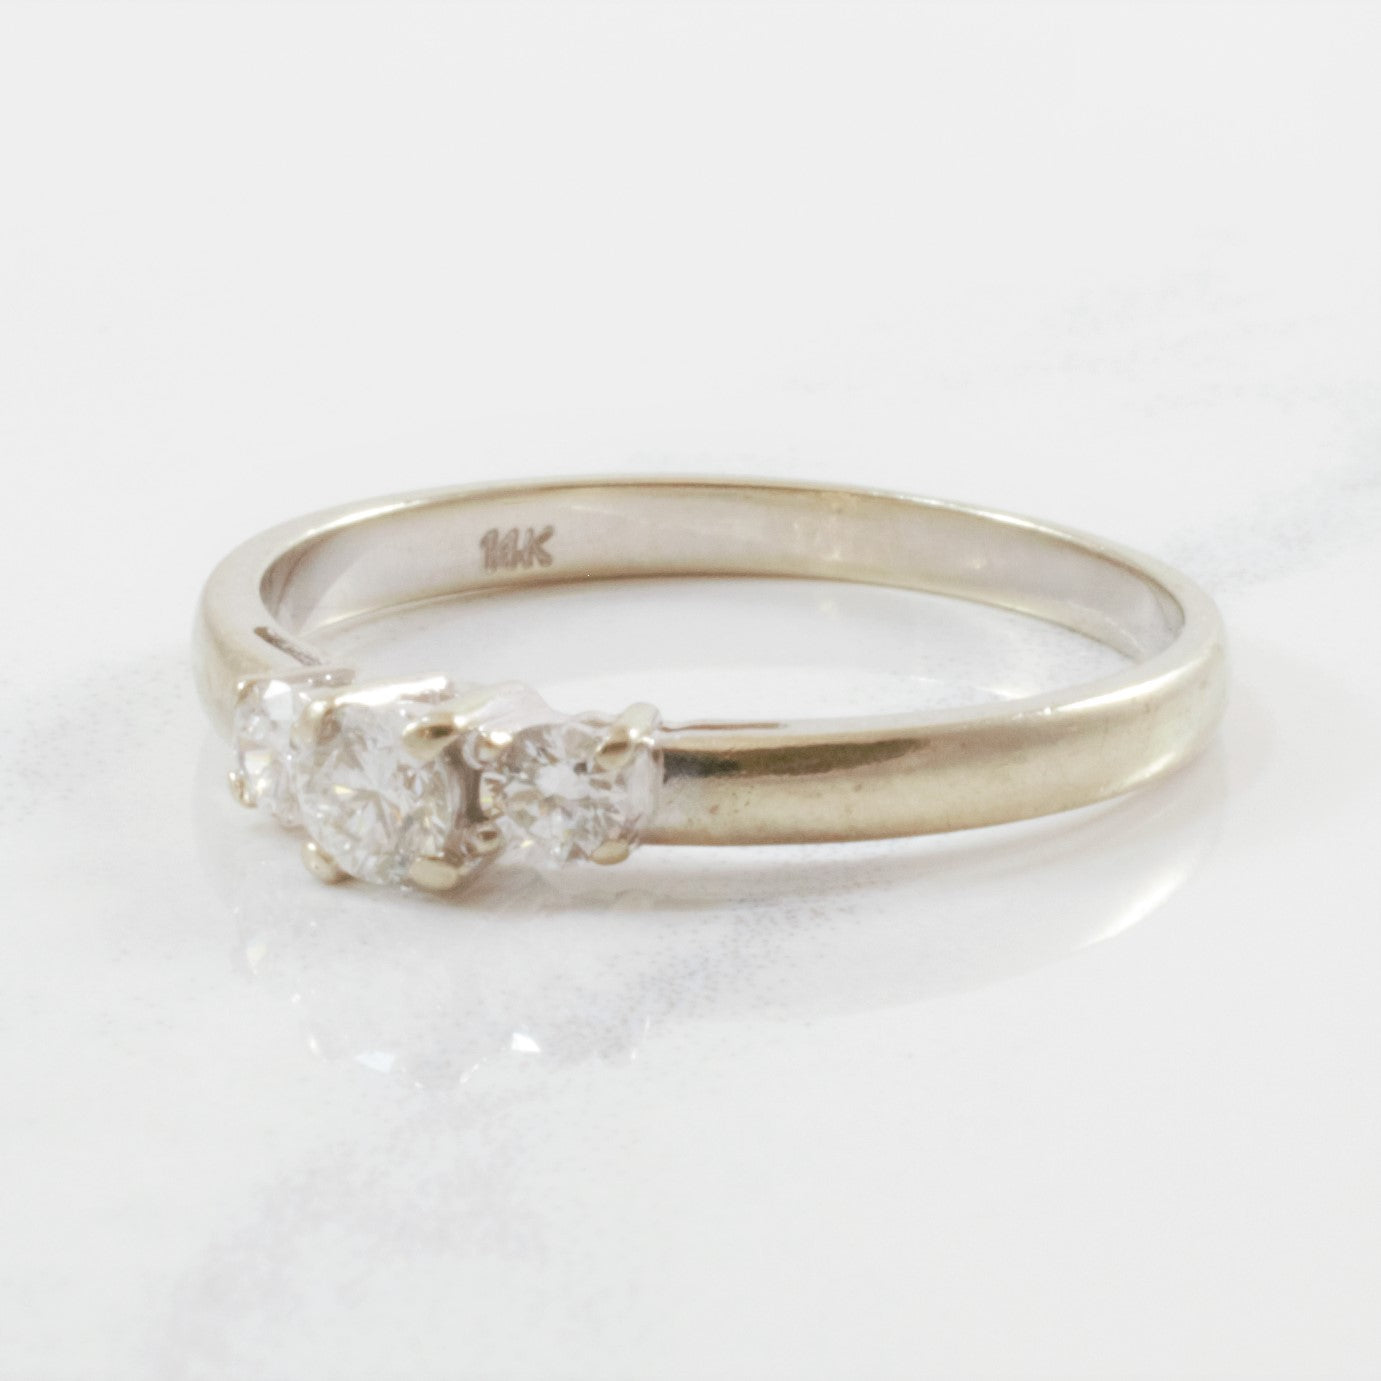 Petite Three Stone Diamond Ring | 0.23 ctw | SZ 6 |